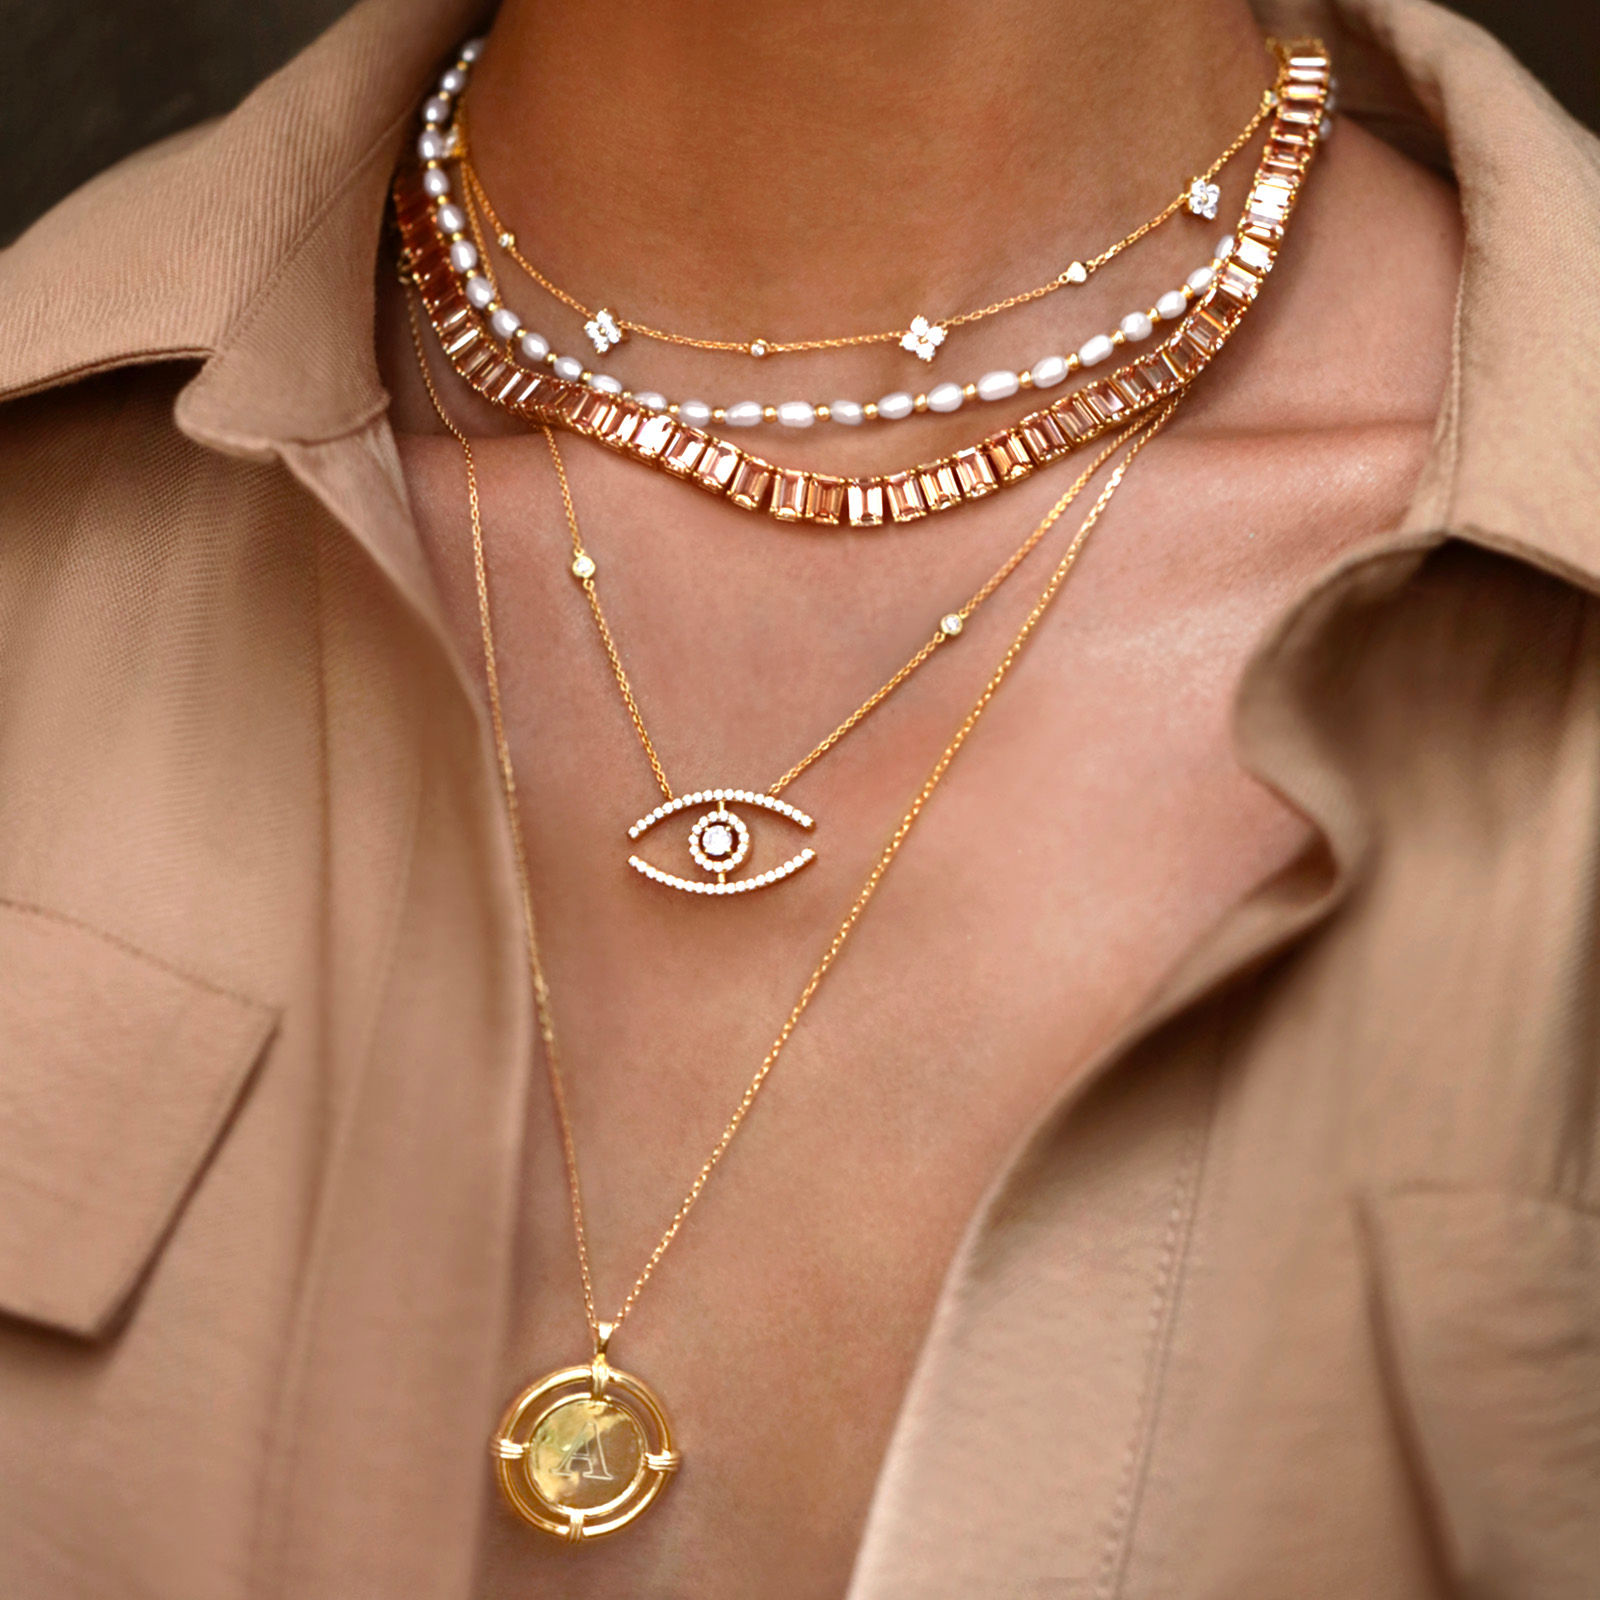 Un'immagine ravvicinata della - Tudor Premium Necklace, che mostra il suo intricato design e gli scintillanti zaffiri bianchi.